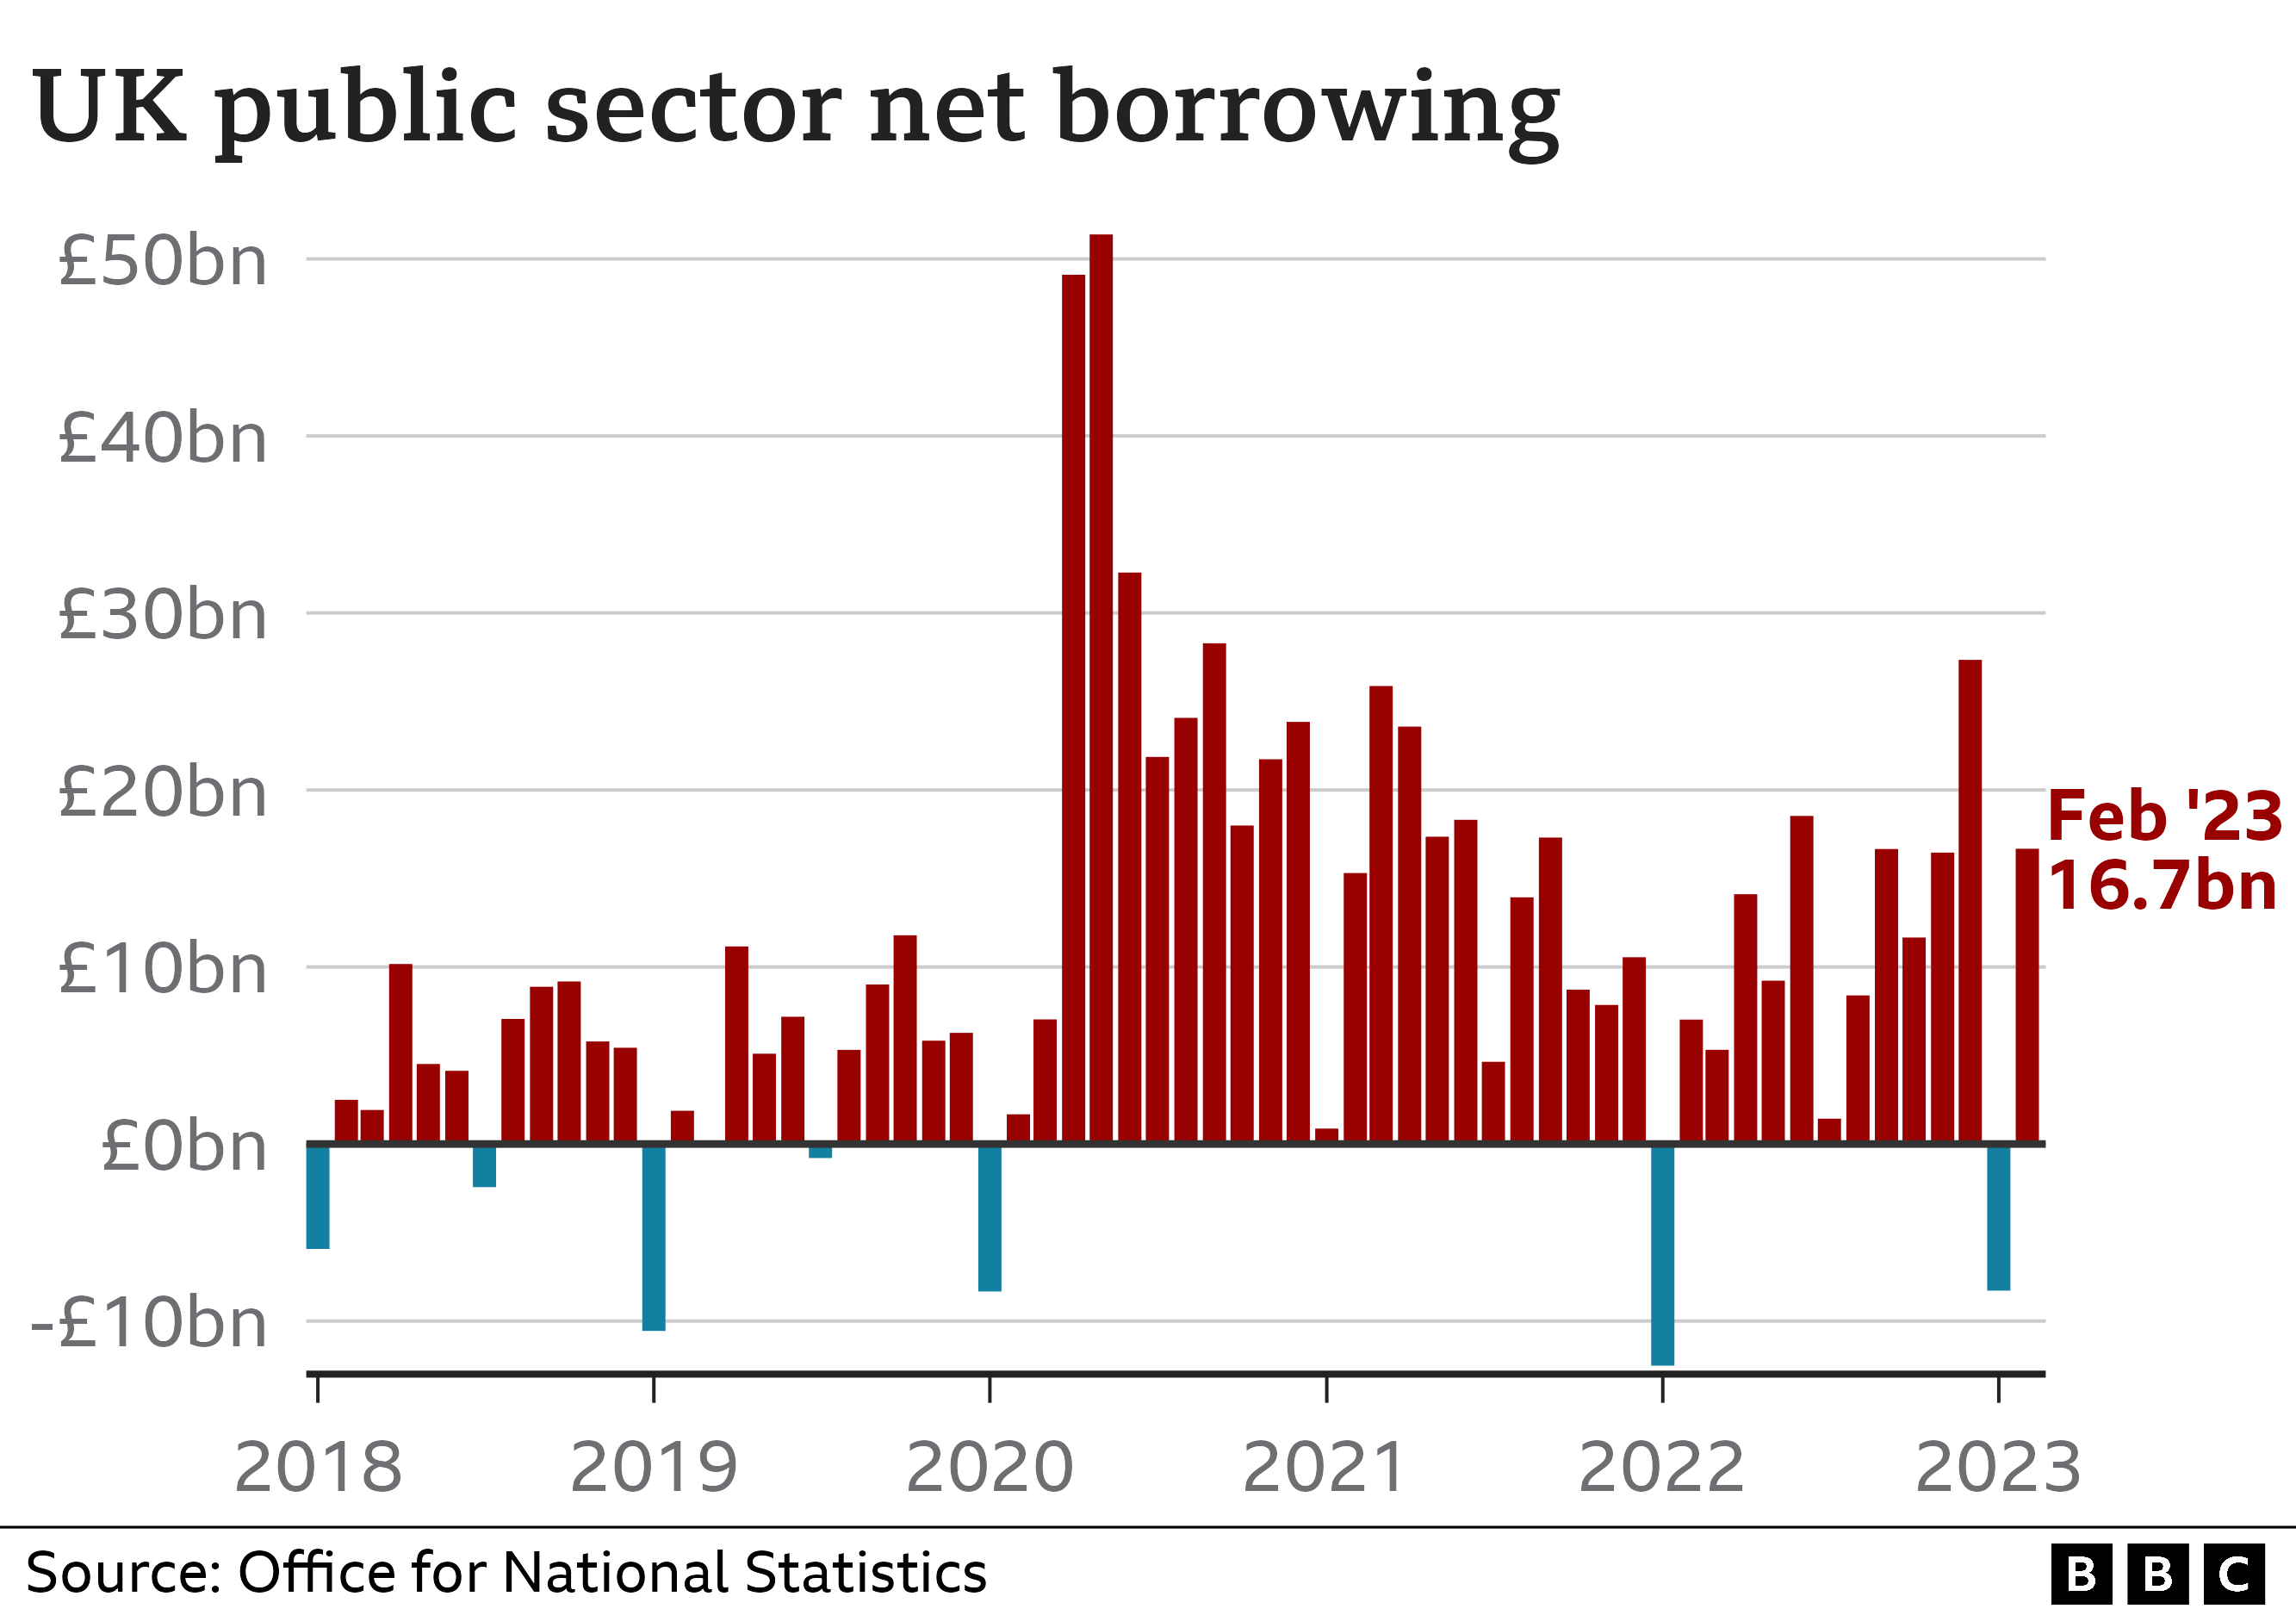 Гистограмма, показывающая чистые заимствования государственного сектора Великобритании. В феврале 2023 года заем составил 16,7 млрд фунтов стерлингов